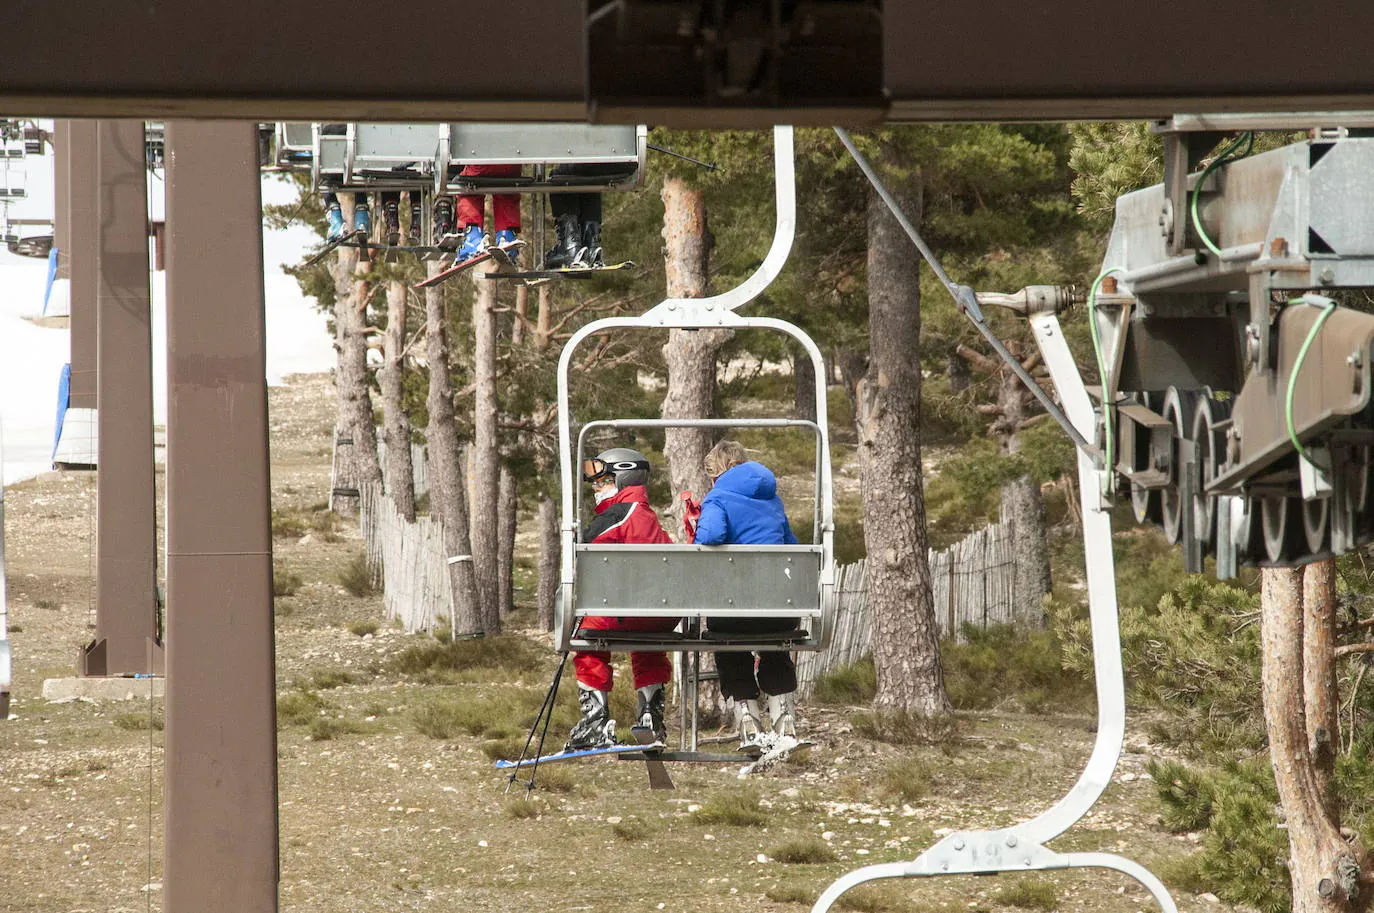 La Comisión de Gestión del Parque Nacional ve posible mantener el esquí en Navacerrada